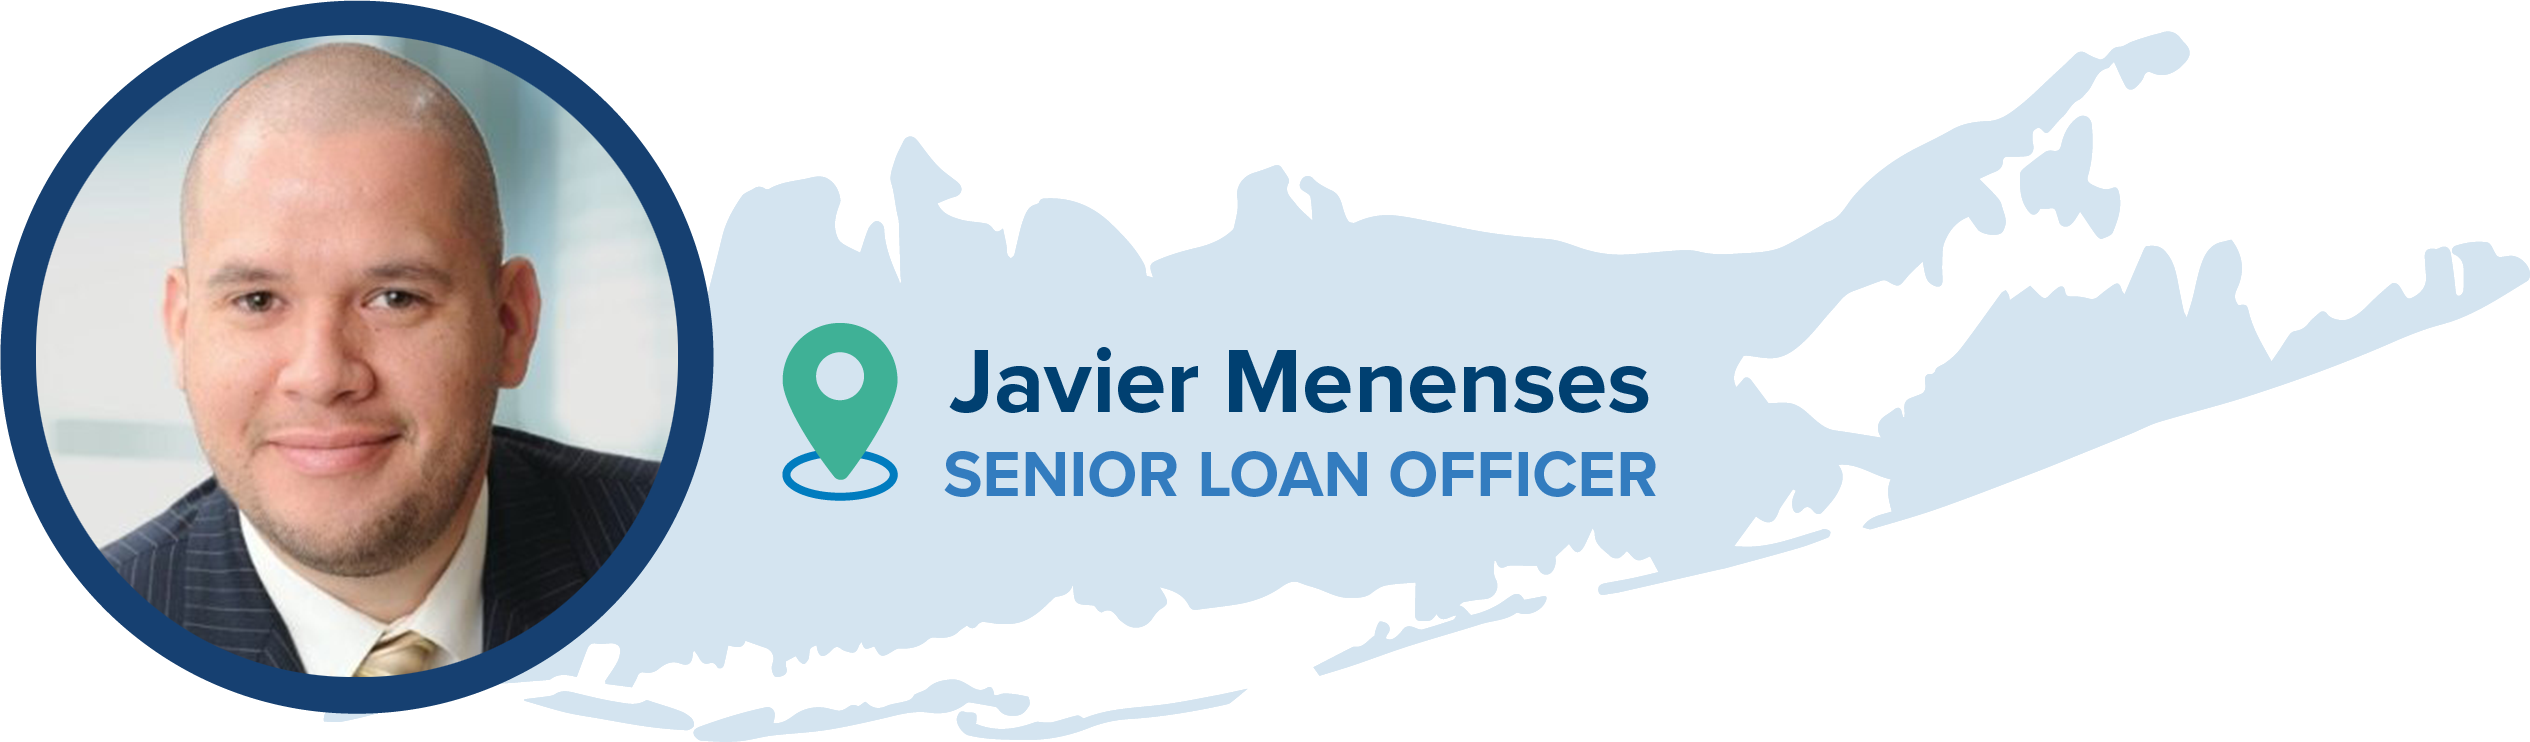 Javier Meneses, Senior Loan Officer